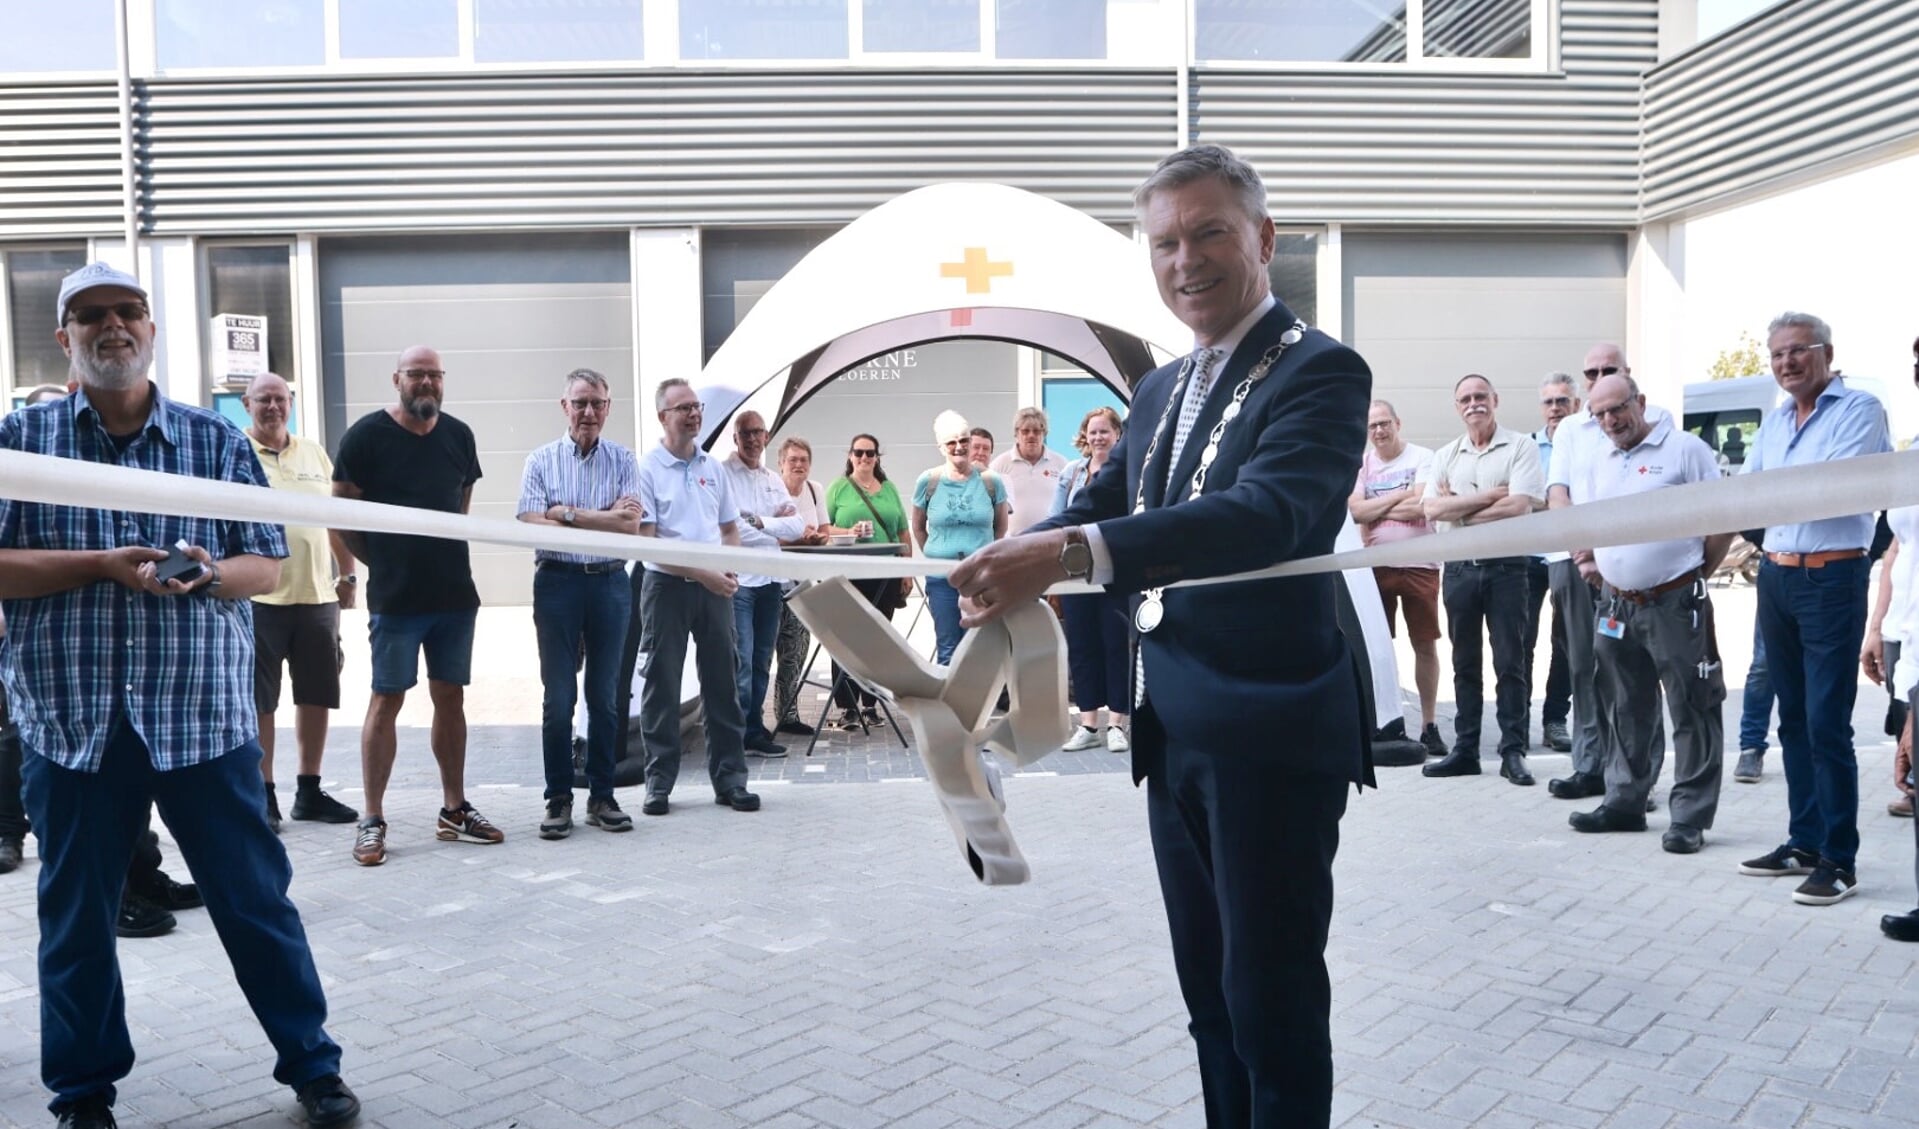 Woensdag 7 juni werd de nieuwe vestiging geopend van de Rode Kruis afdeling Voorne-Putten aan de Voltaweg in Hellevoetsluis. 